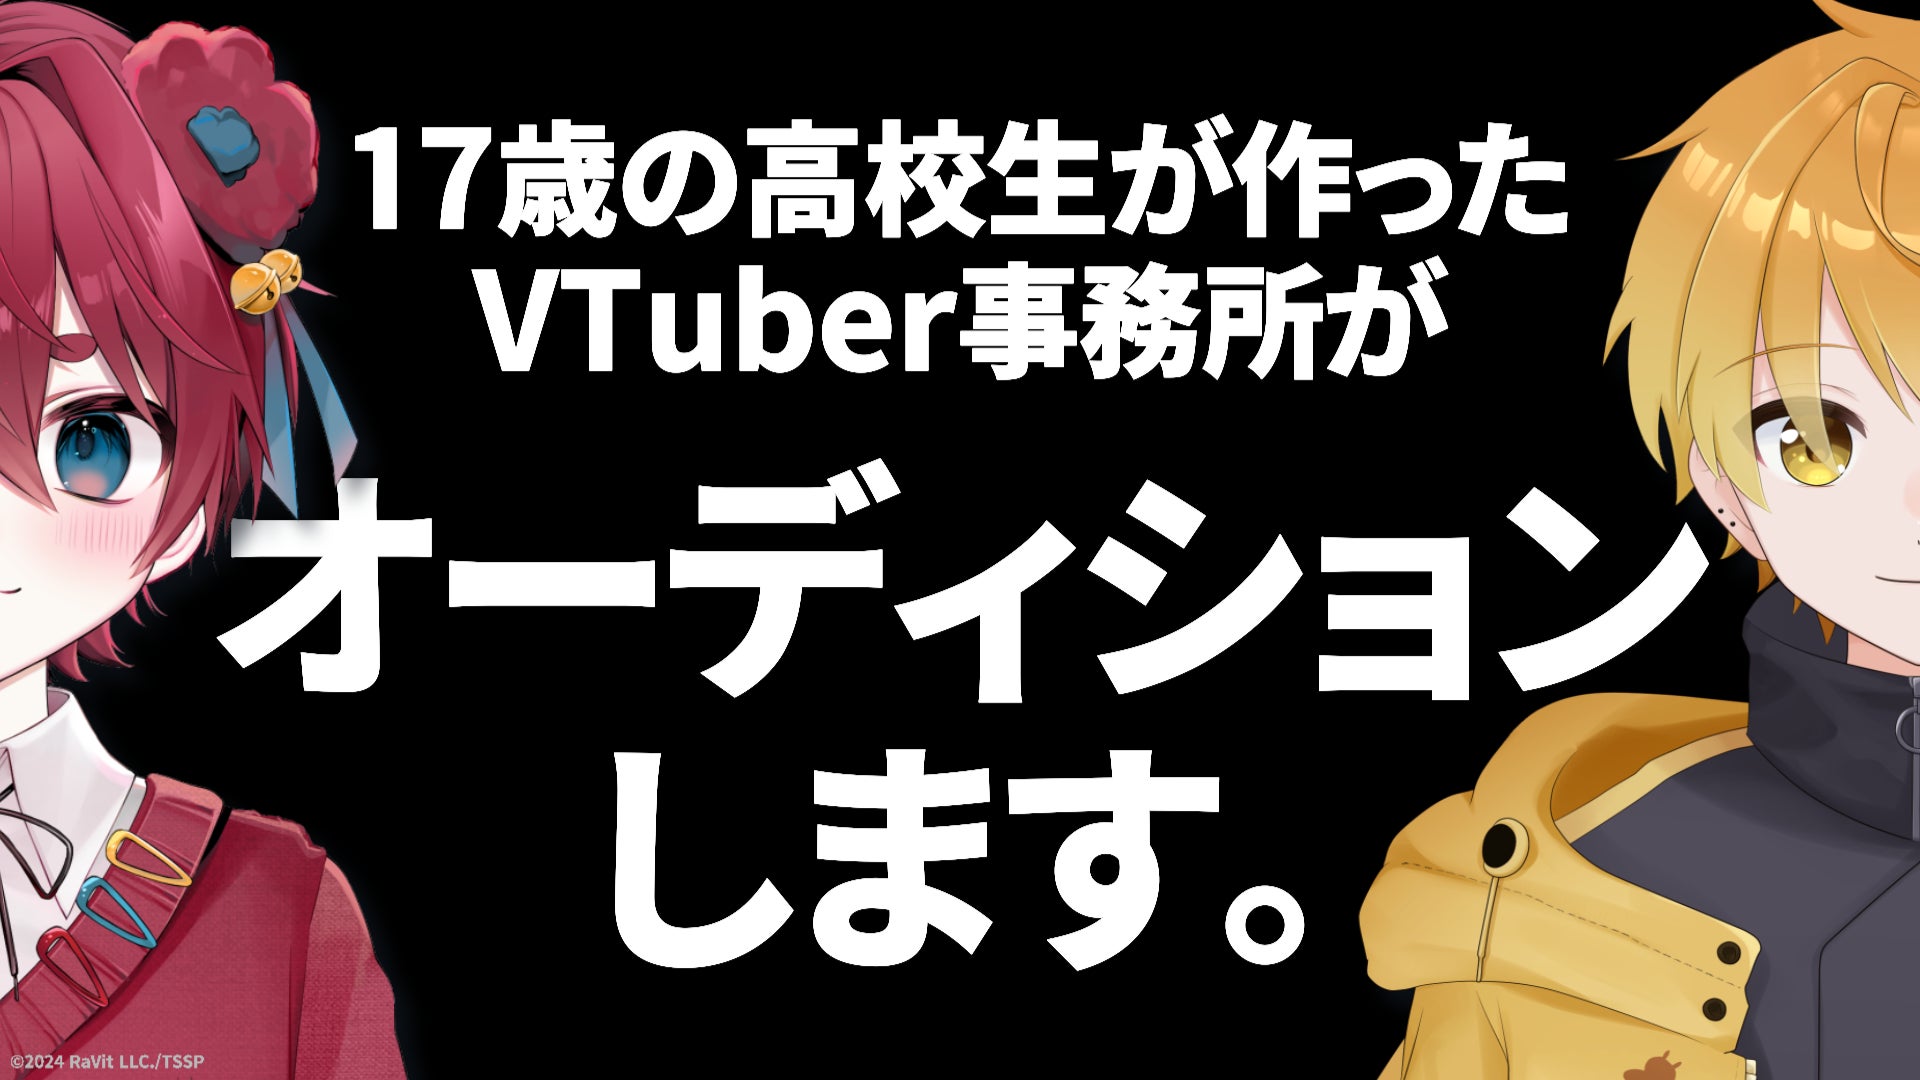 【オーディション】17歳の高校生が作ったVTuber事務所【すいすと】が、初の常設VTuberオーディションを開始